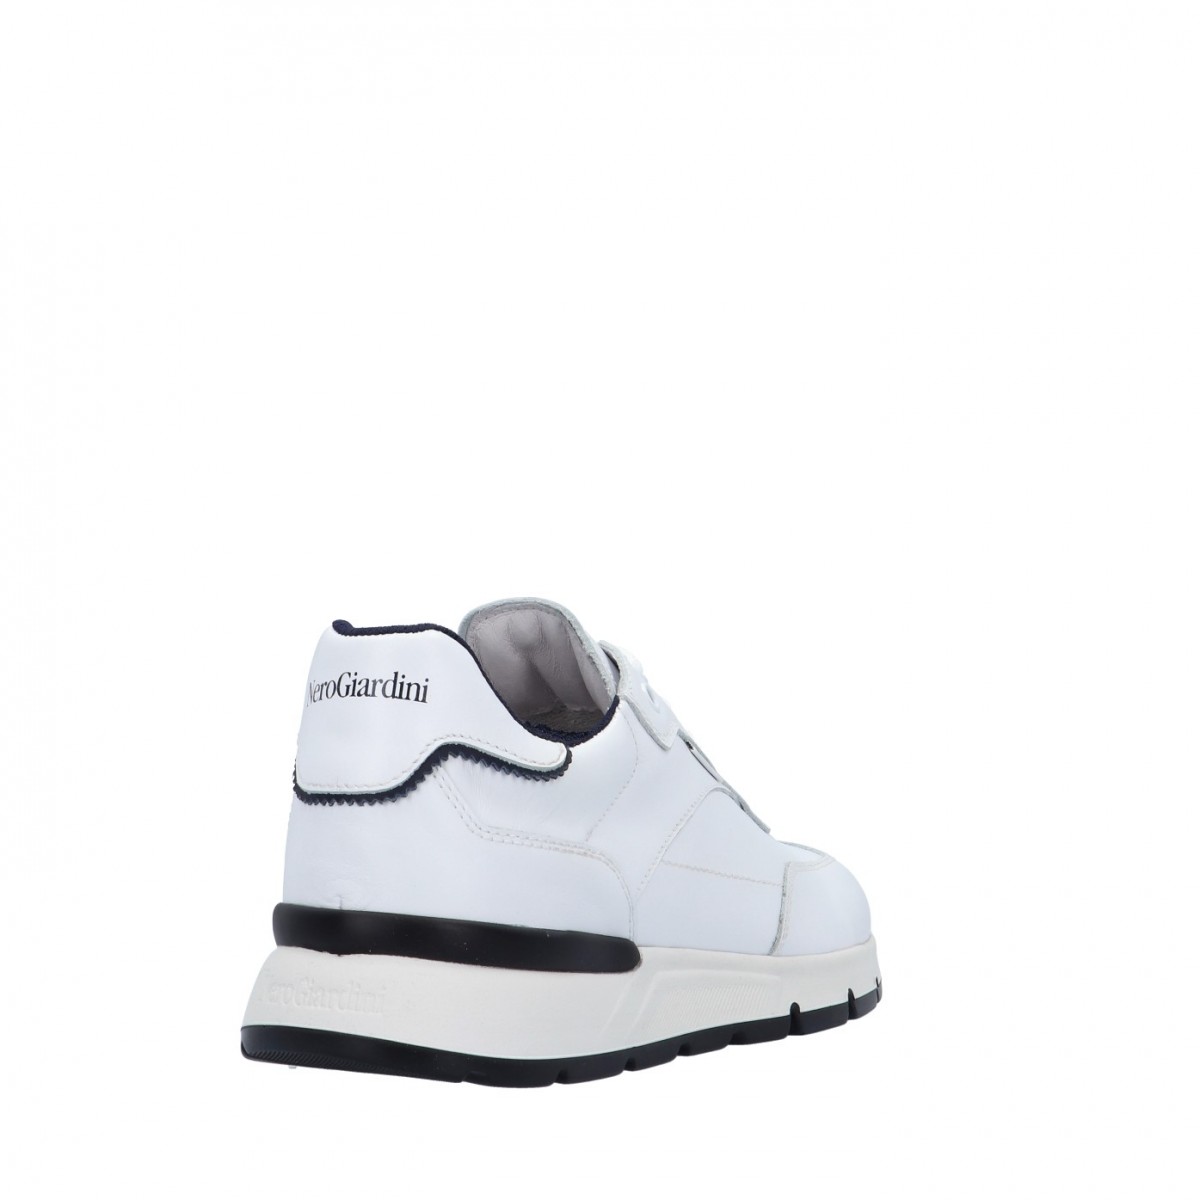 Nerogiardini Sneaker Bianco Gomma E101992U